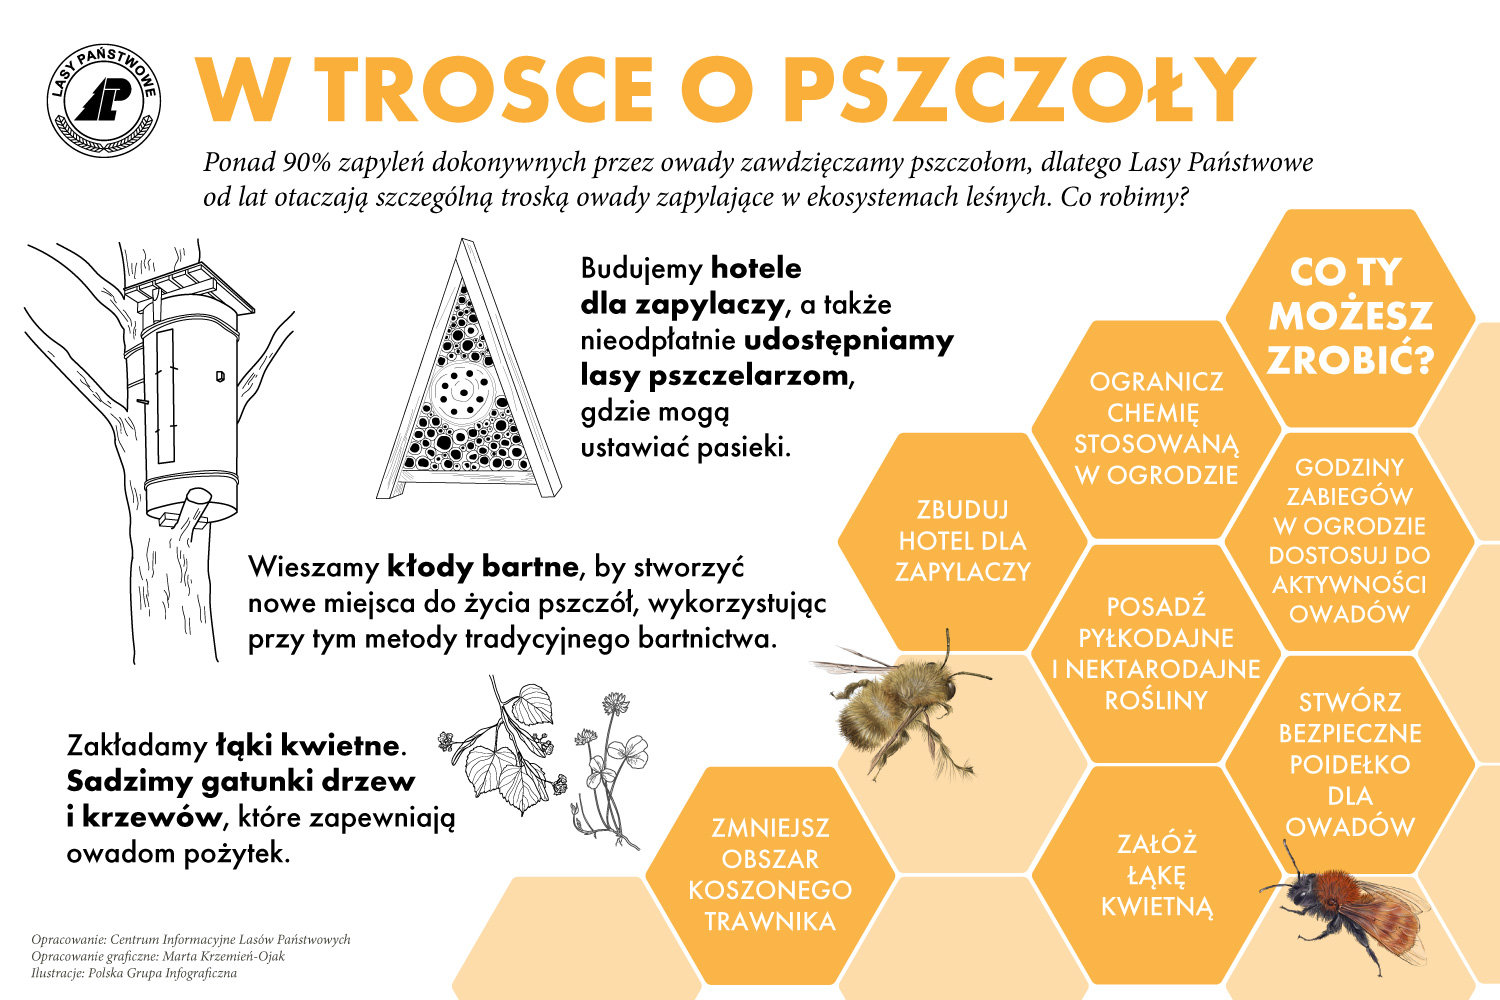 Infografika przedstawia działania leśników na rzecz ochrony pszczół.